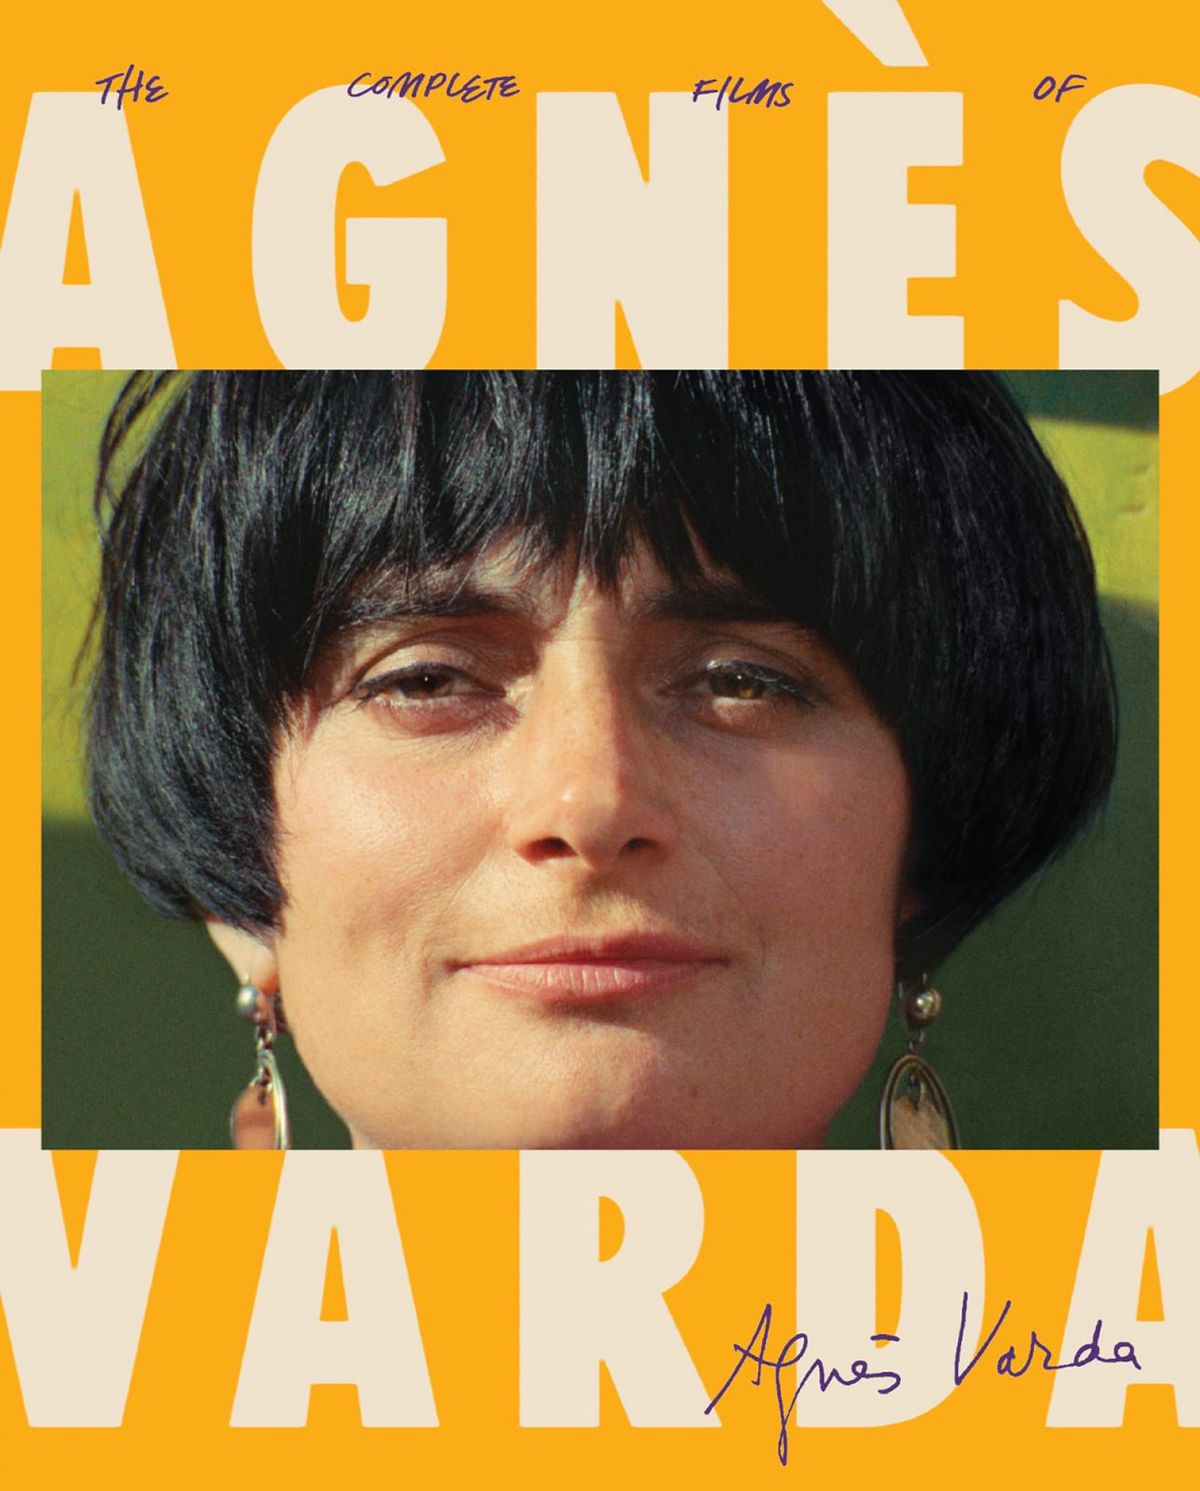 Copertina del cofanetto Criterion Collection di The Complete Films of Agnès Varda.